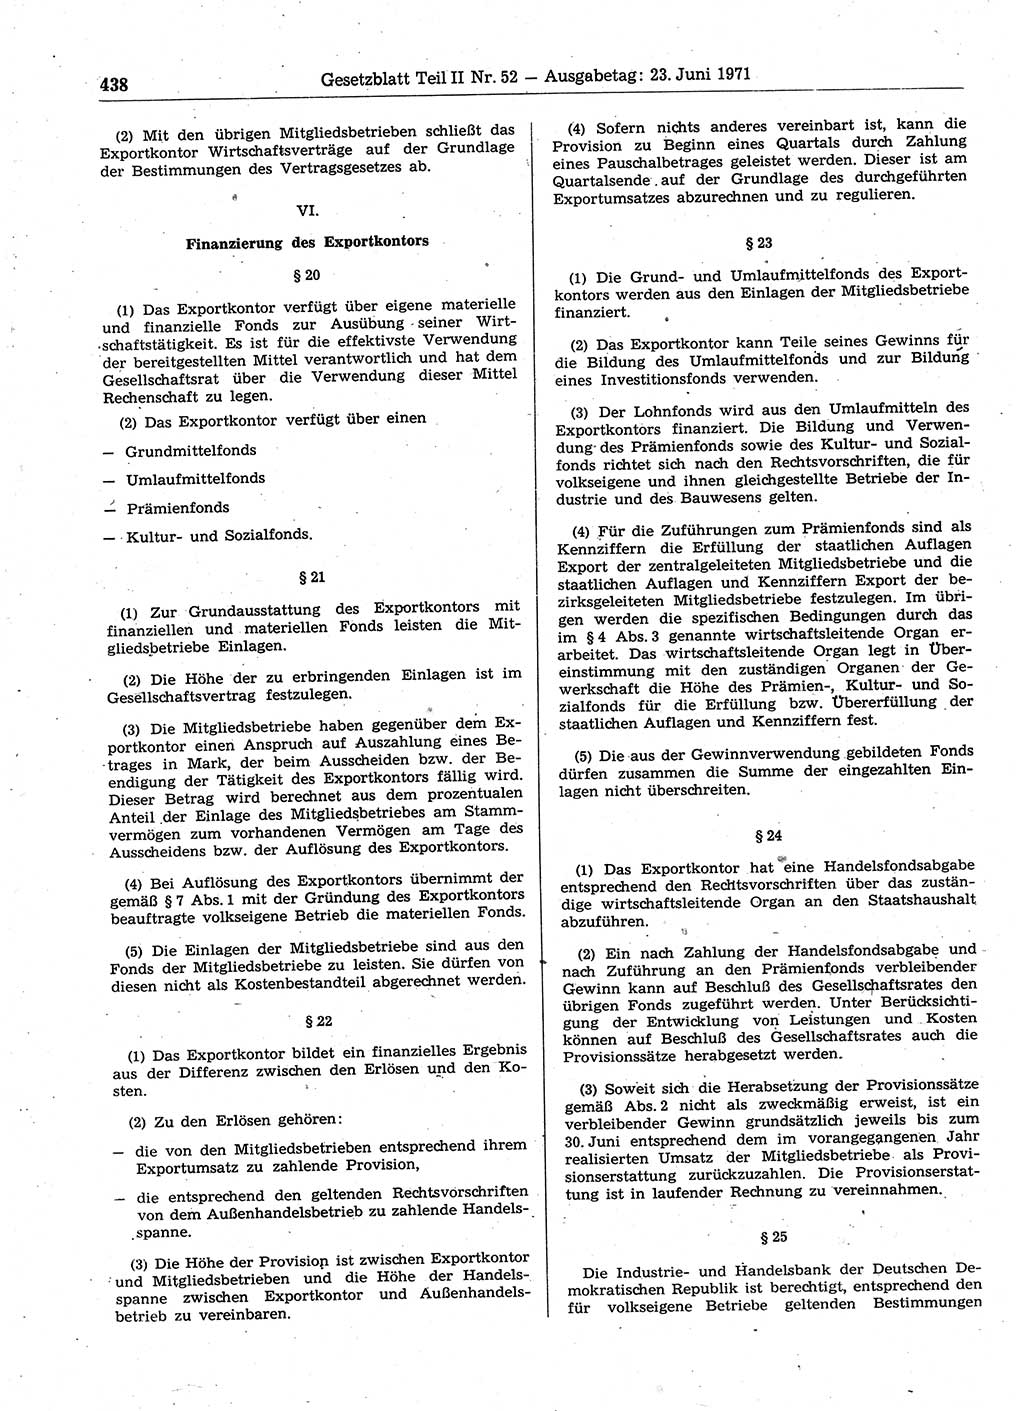 Gesetzblatt (GBl.) der Deutschen Demokratischen Republik (DDR) Teil ⅠⅠ 1971, Seite 438 (GBl. DDR ⅠⅠ 1971, S. 438)